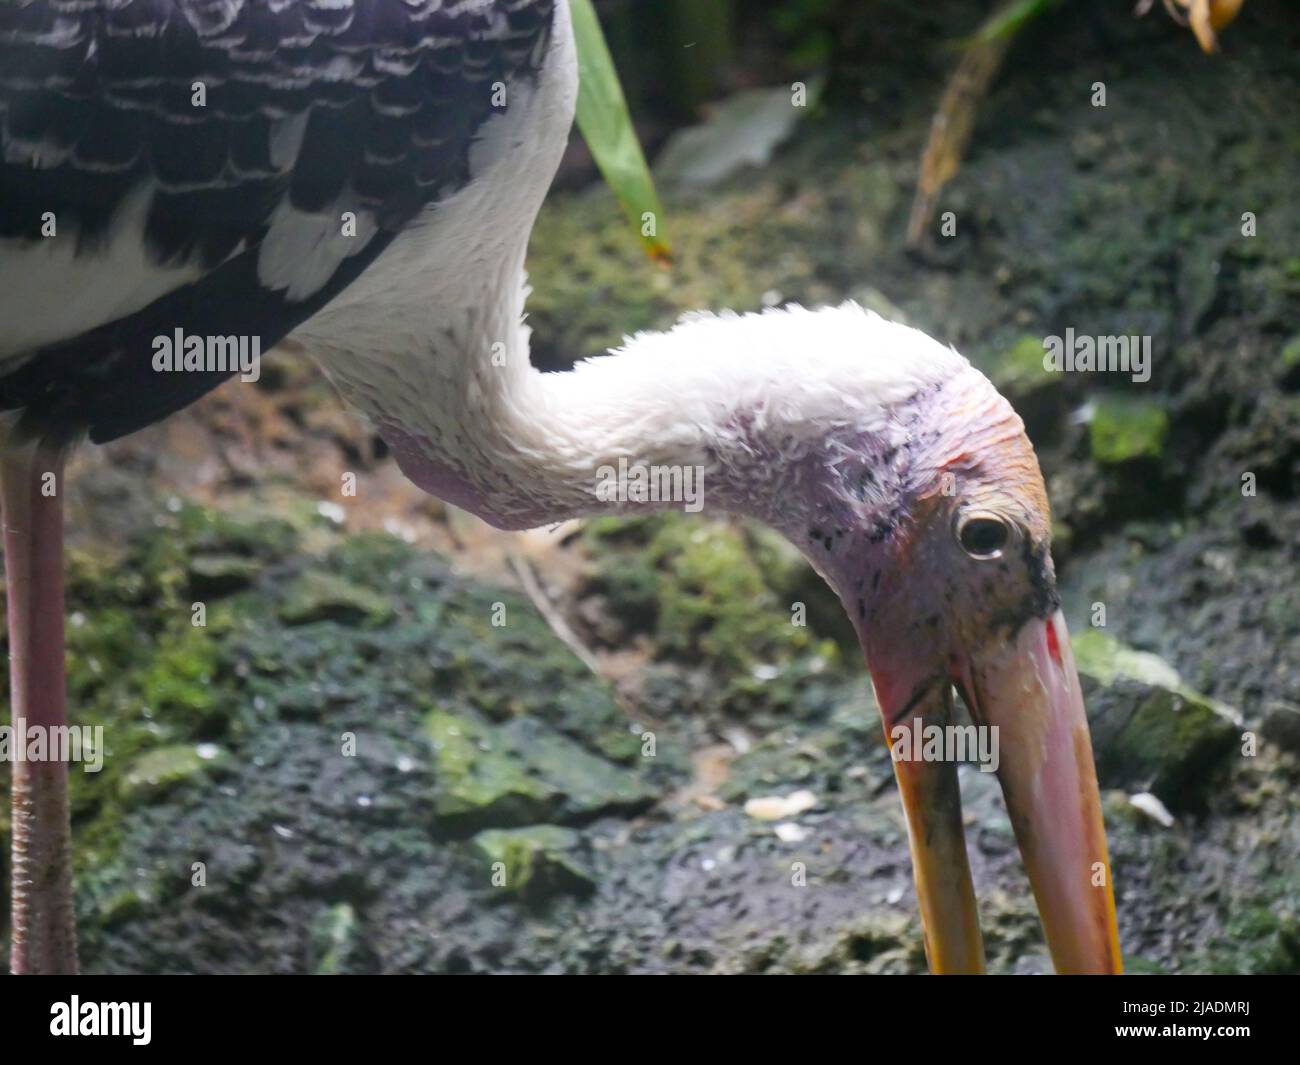 Der amerikanische Weißibis-Vogel (Eudocimus albus) ist eine Vogelart der ibis-Familie, die im Park unterwegs ist Stockfoto